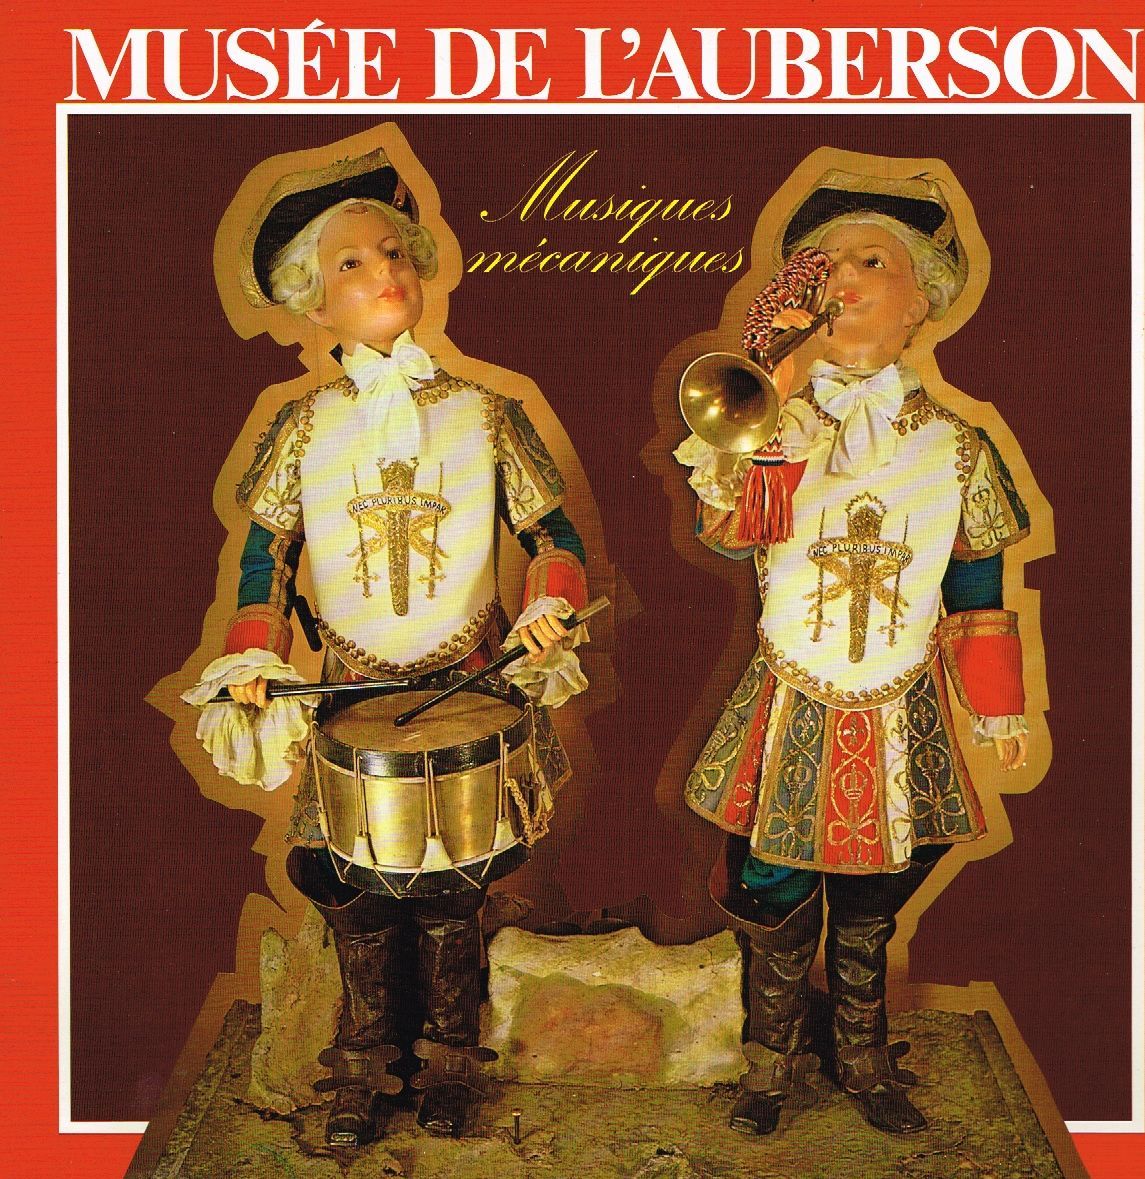 musée_de_auberson_musqiques_mécaniques